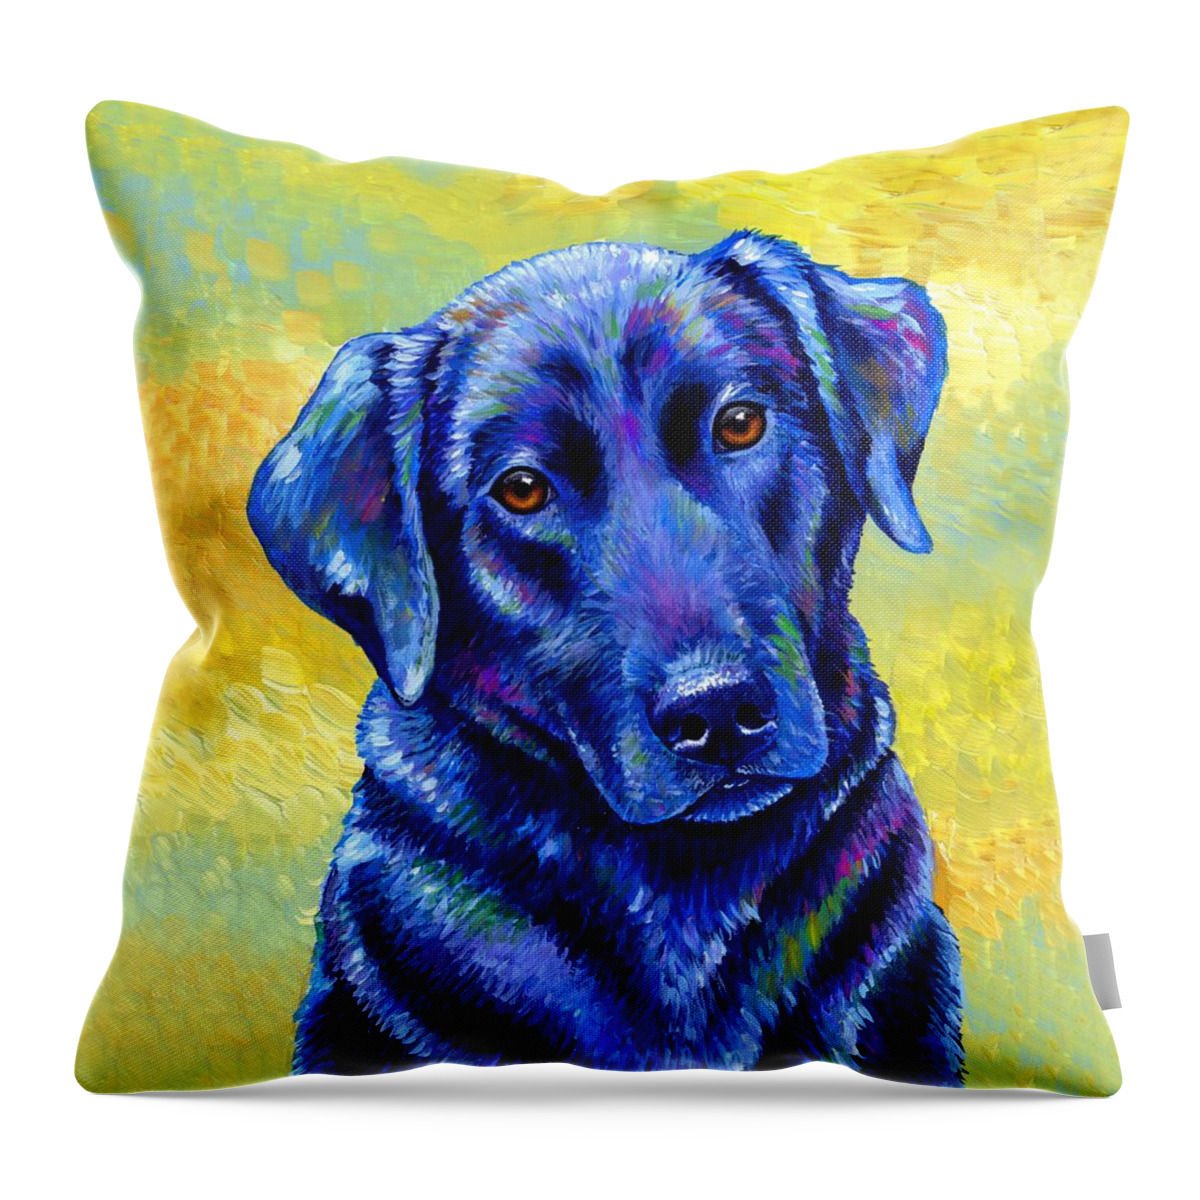 Labrador Retriever Throw Pillow featuring the painting Loyal Companion - Colorful Black Labrador Retriever Dog by Rebecca Wang